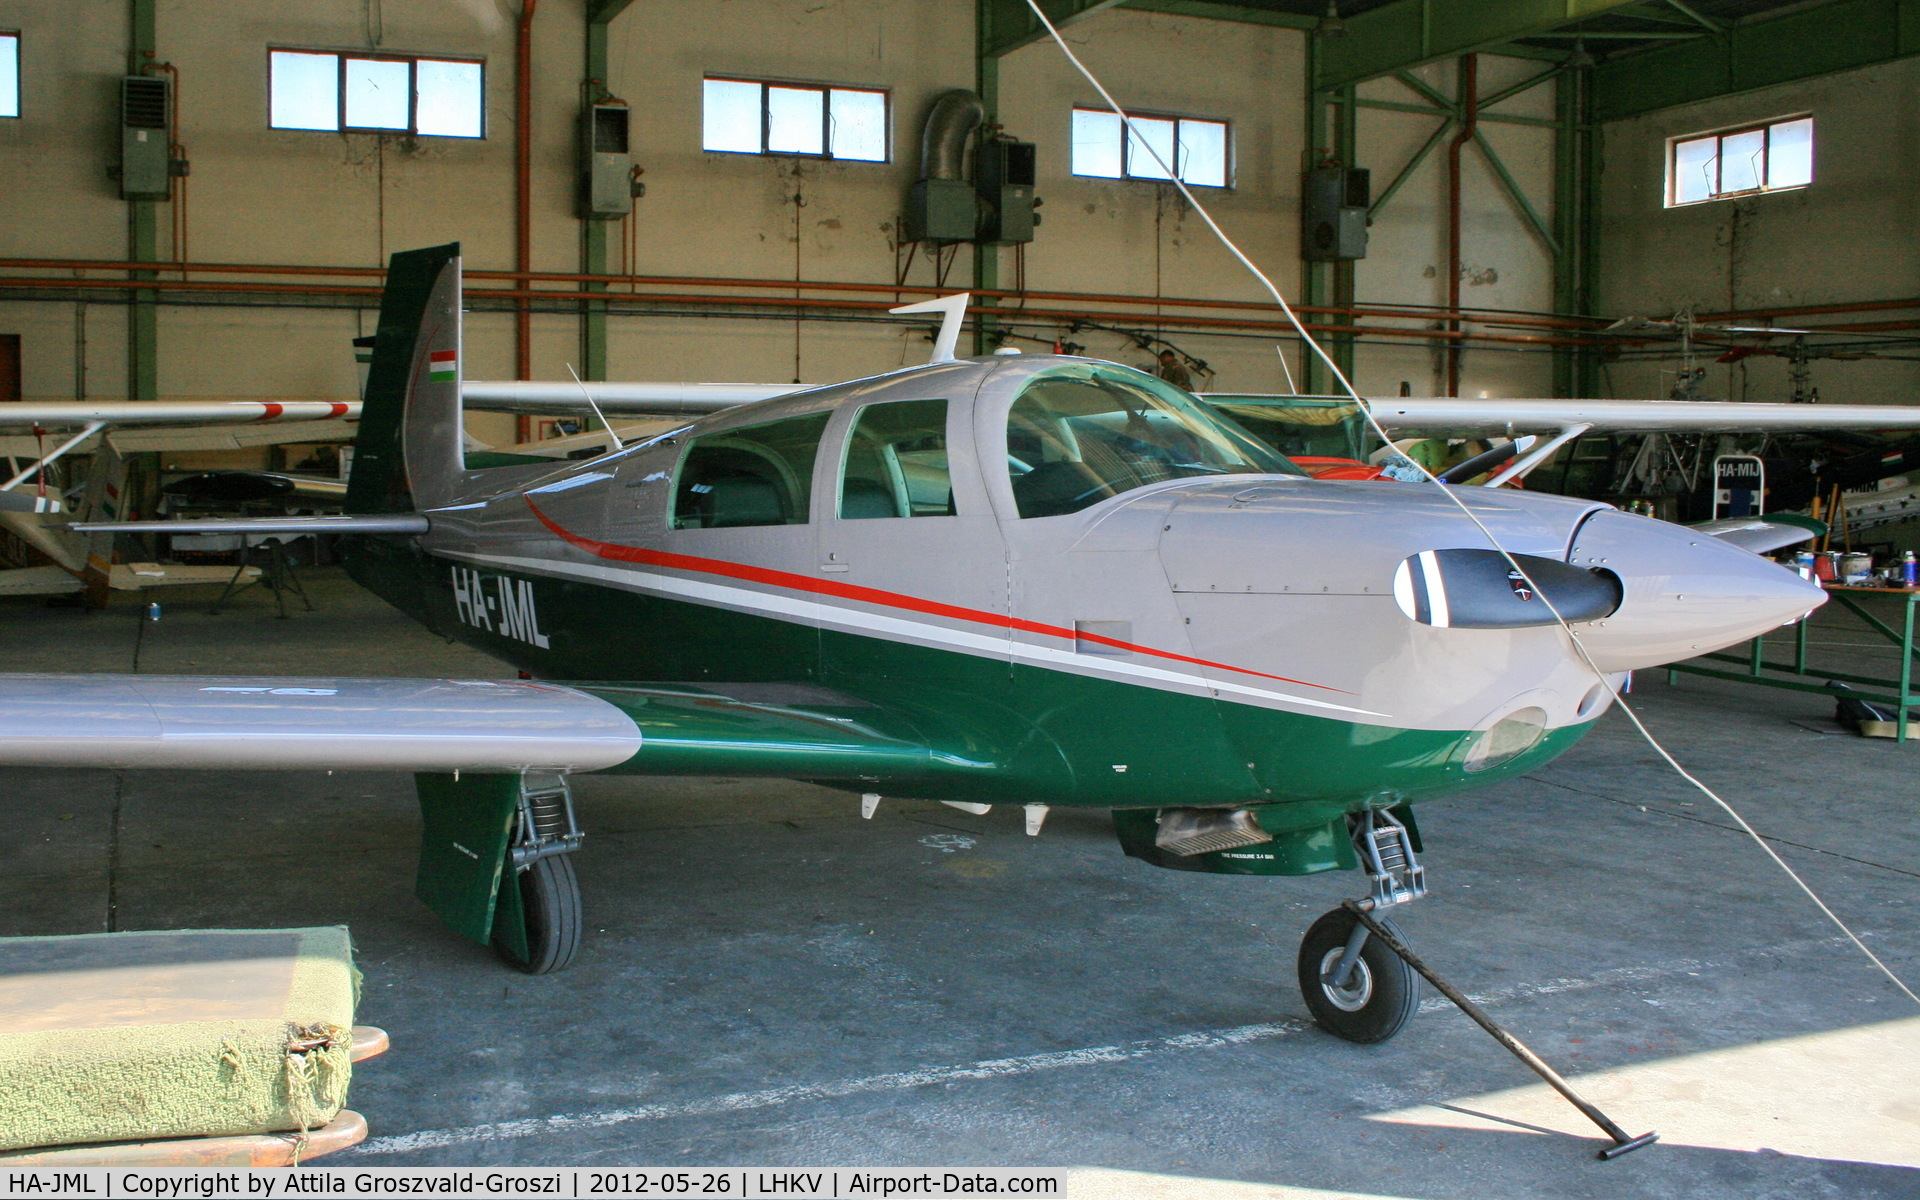 HA-JML, 1978 Mooney M20J 201 C/N 24-0586, In Kaposujlak hangar